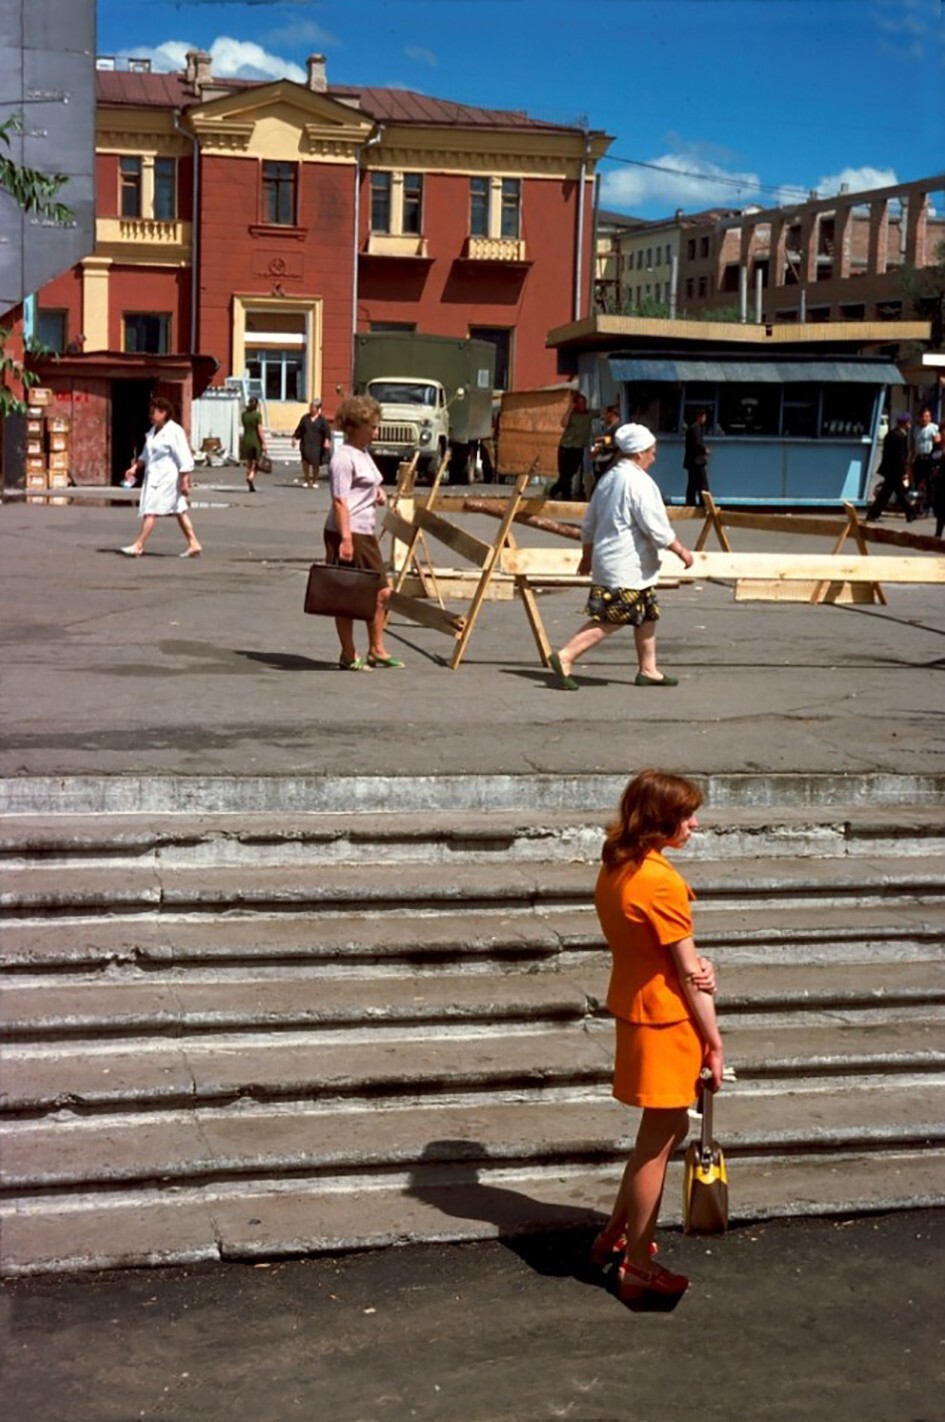 Ступеньки у перрона читинского вокзала, 1976 год